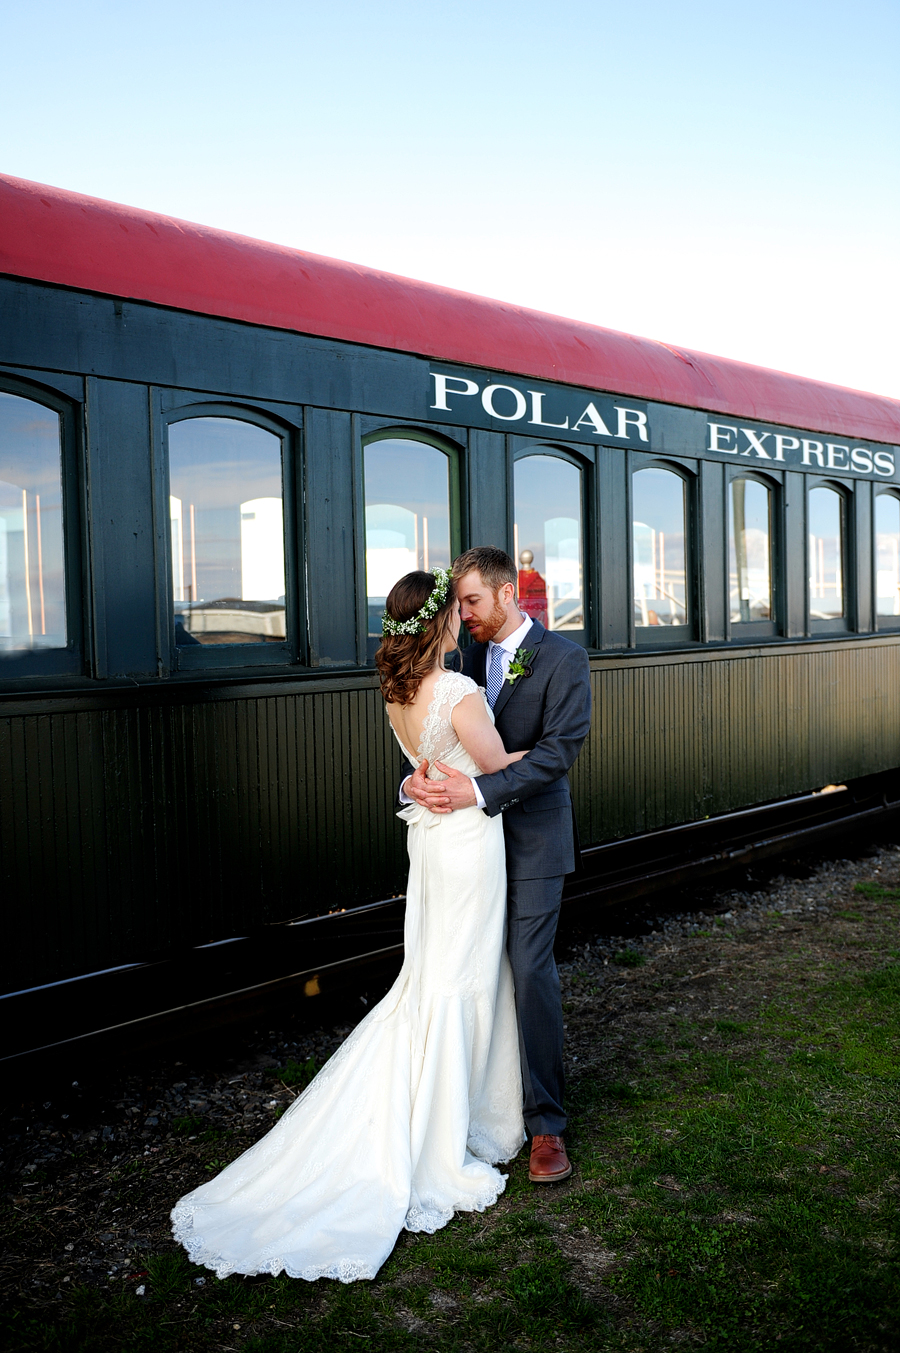 polar express wedding photo